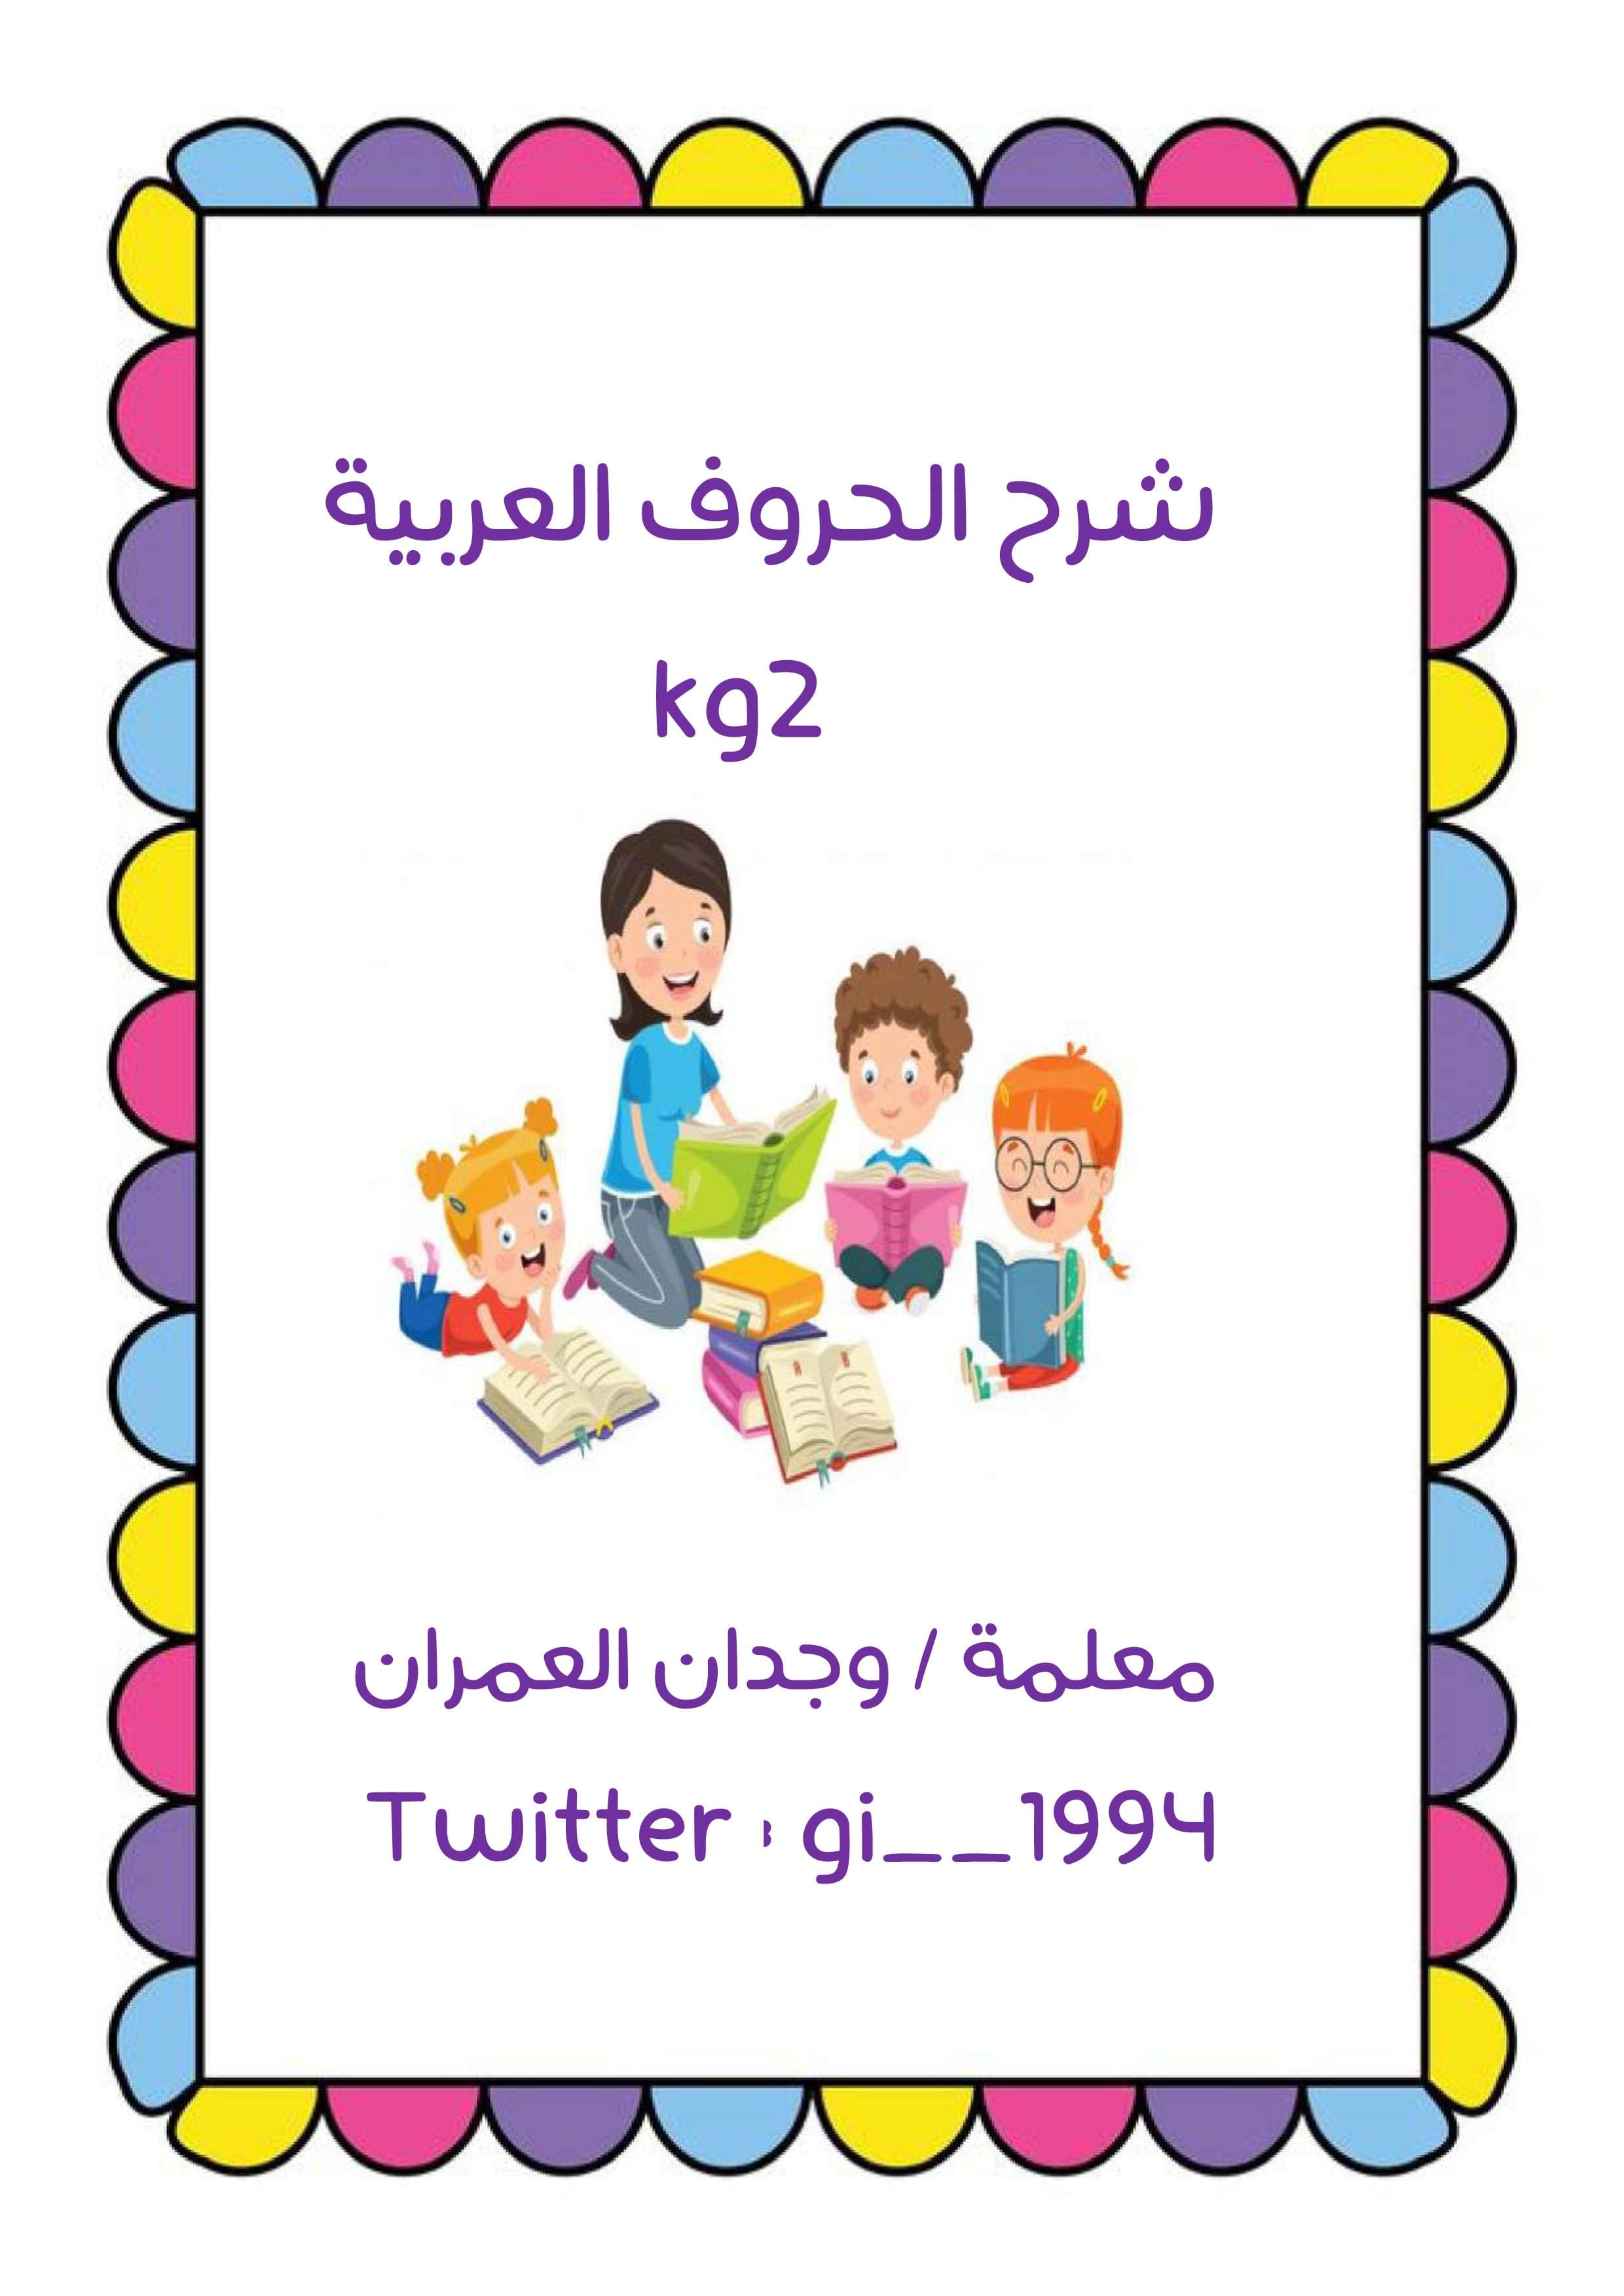 تعليم الاطفال شرح الحروف العربية بطريقة بسيطة و ممتعة